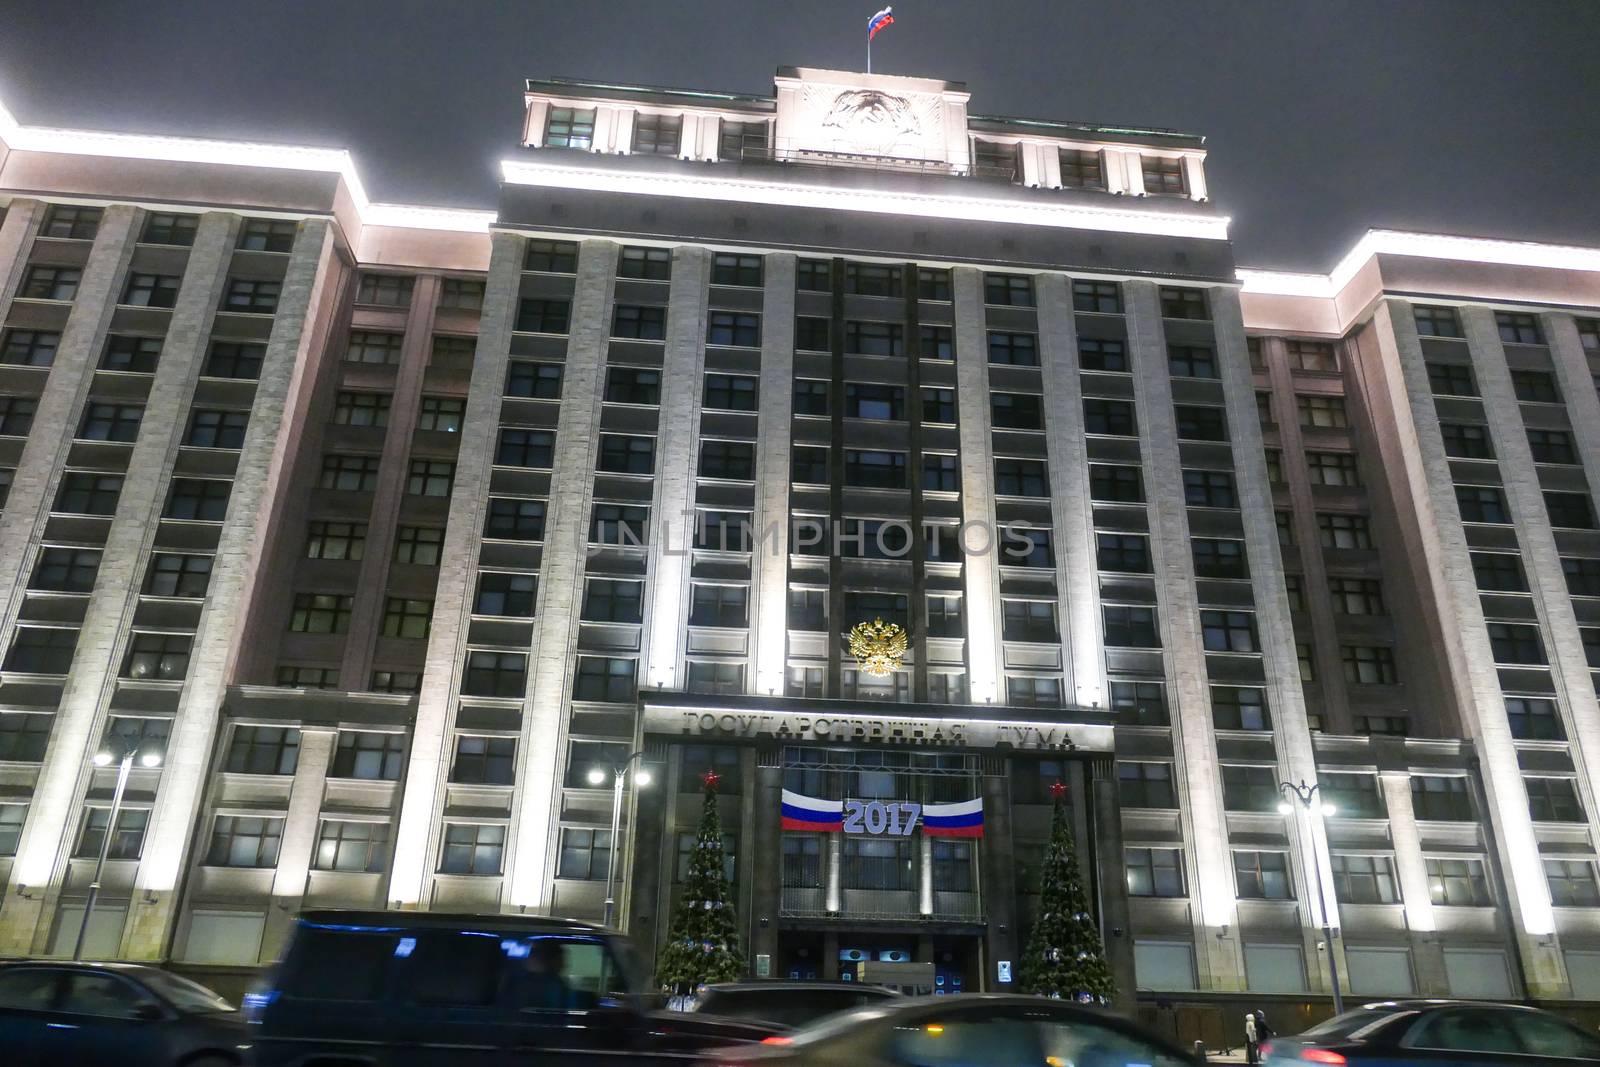 Russian State Duma by L86